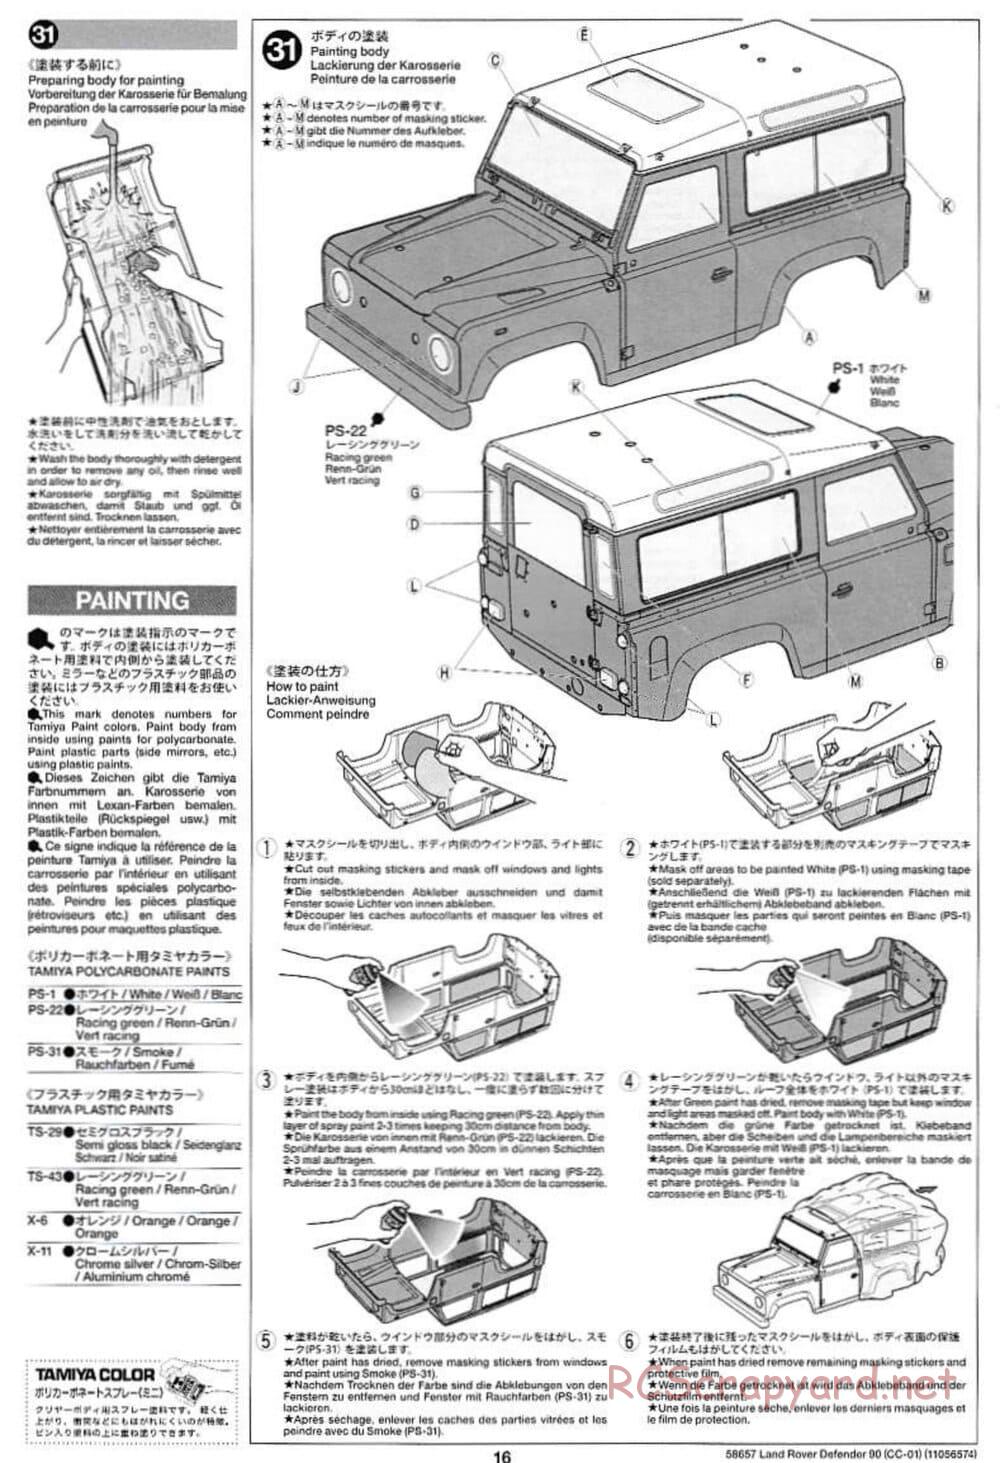 Tamiya - Land Rover Defender 90 - CC-01 Chassis - Manual - Page 16